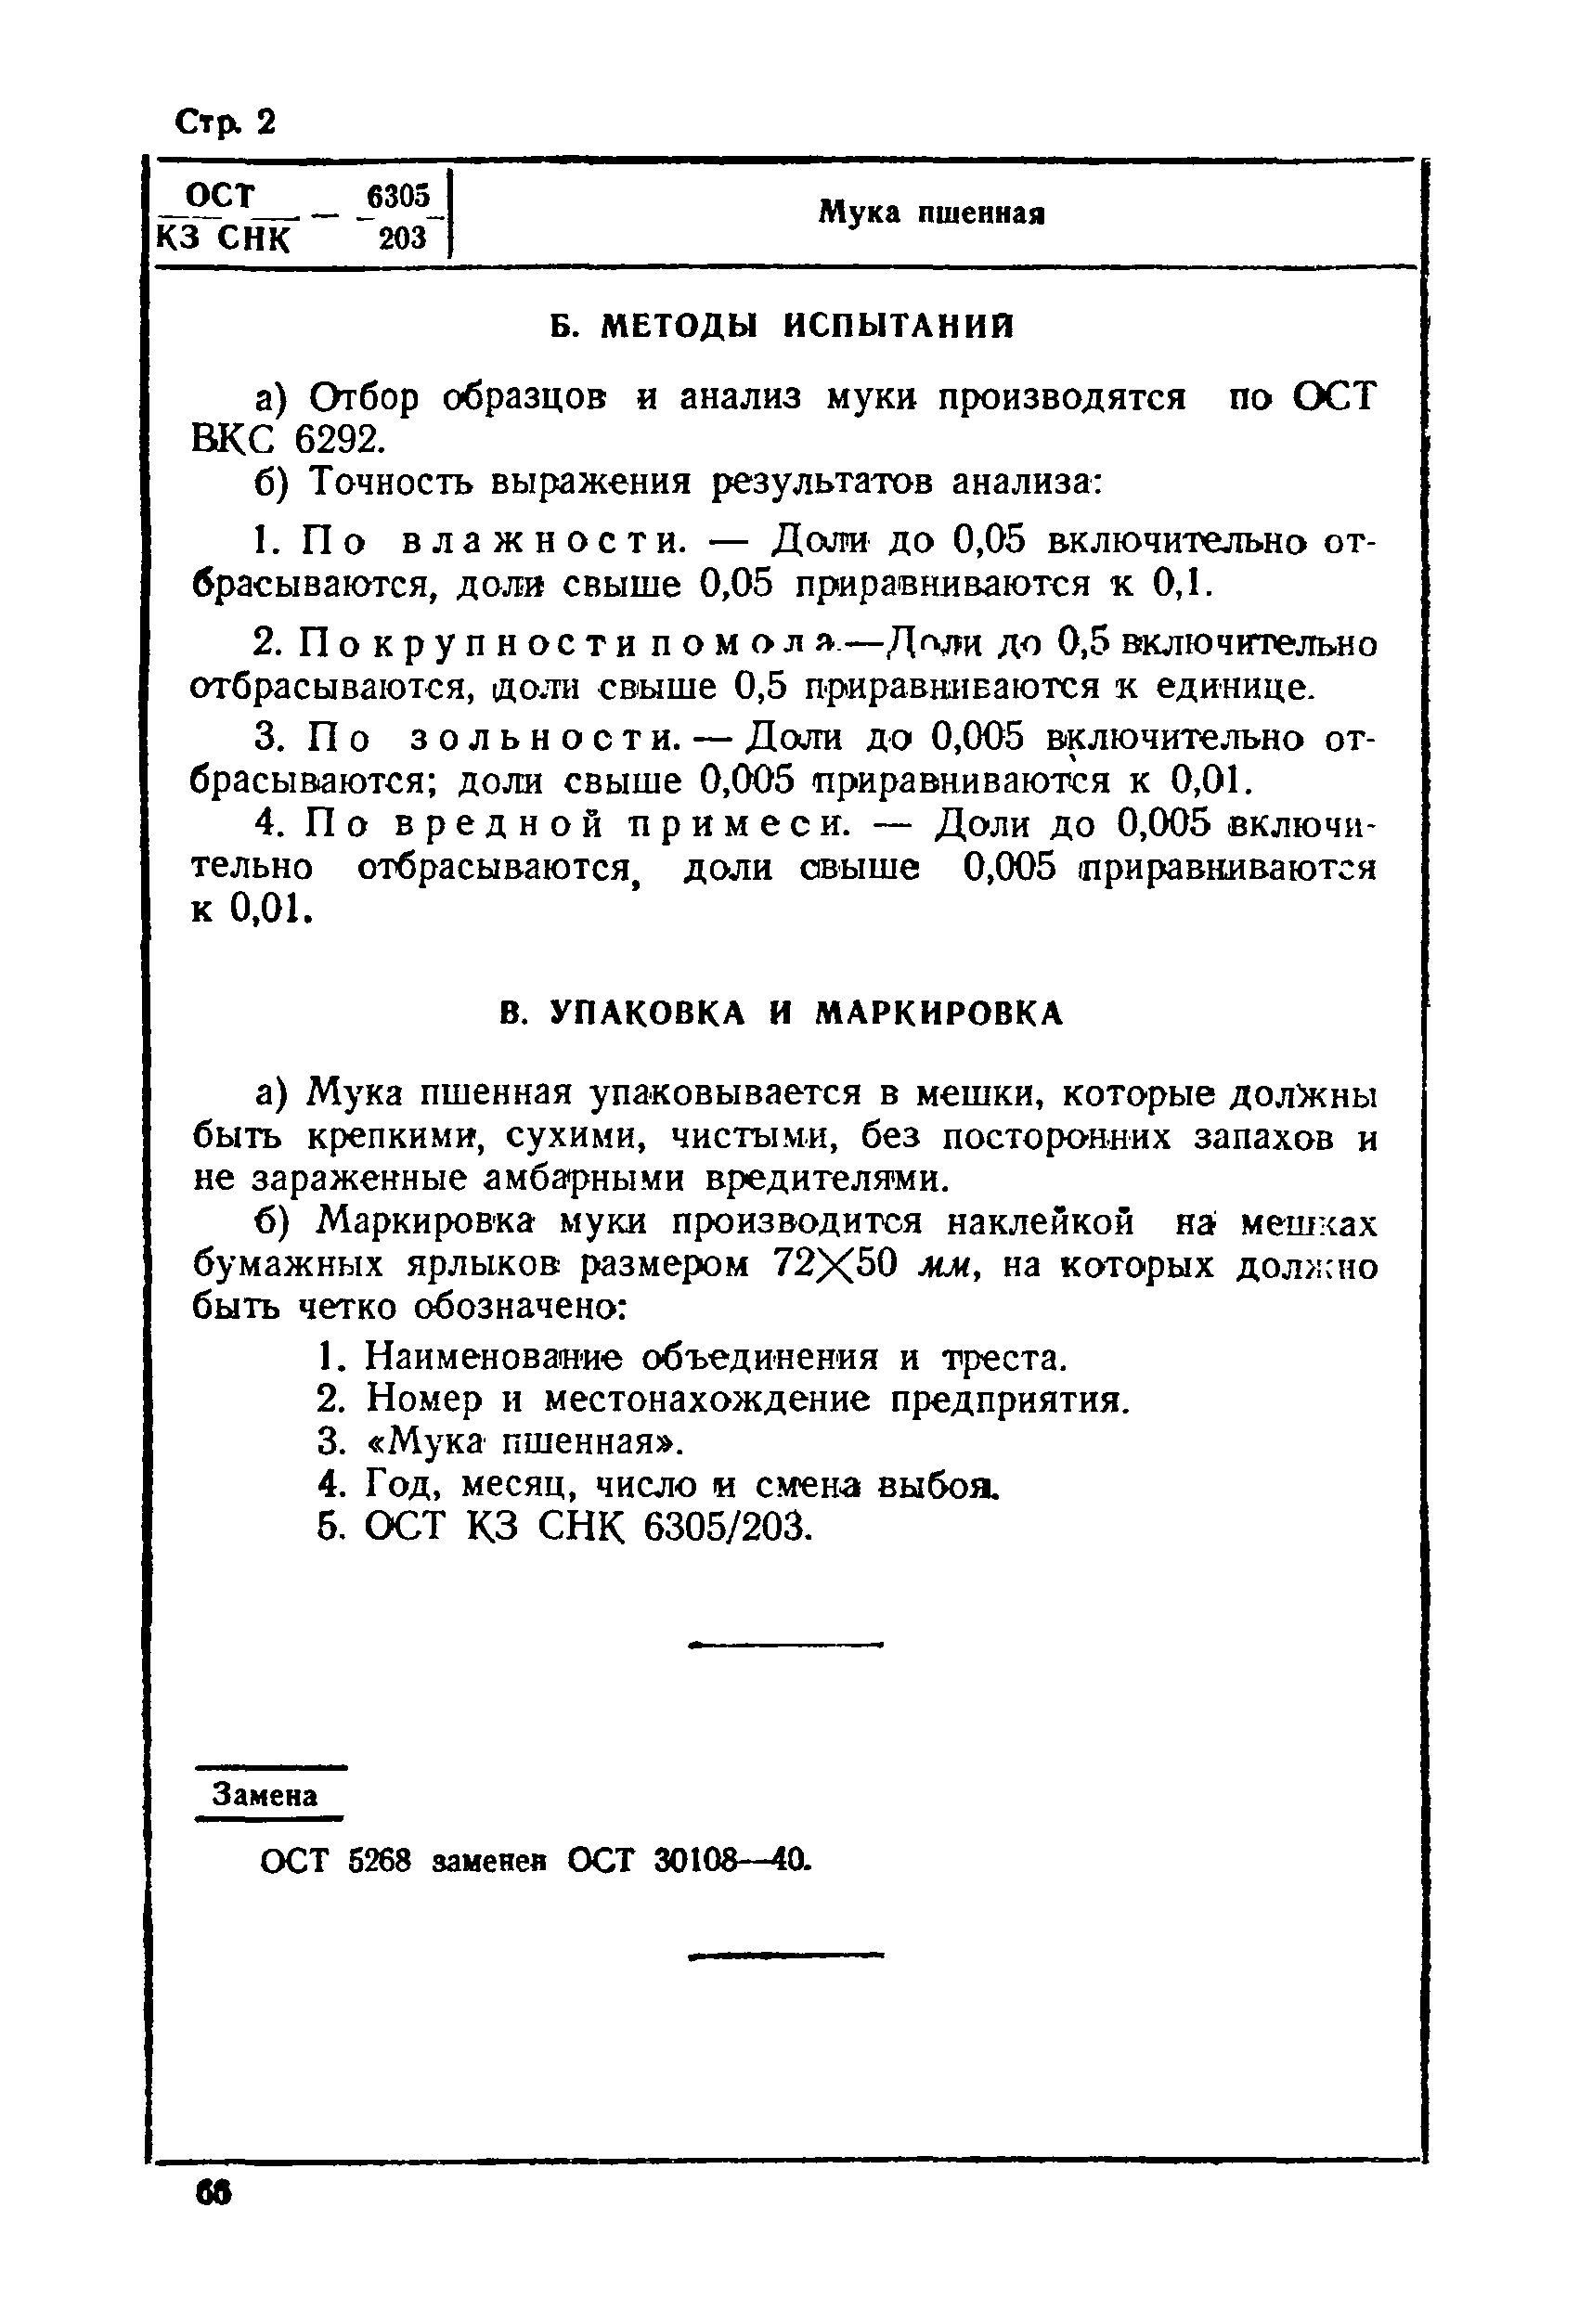 ОСТ КЗ СНК 6305/203